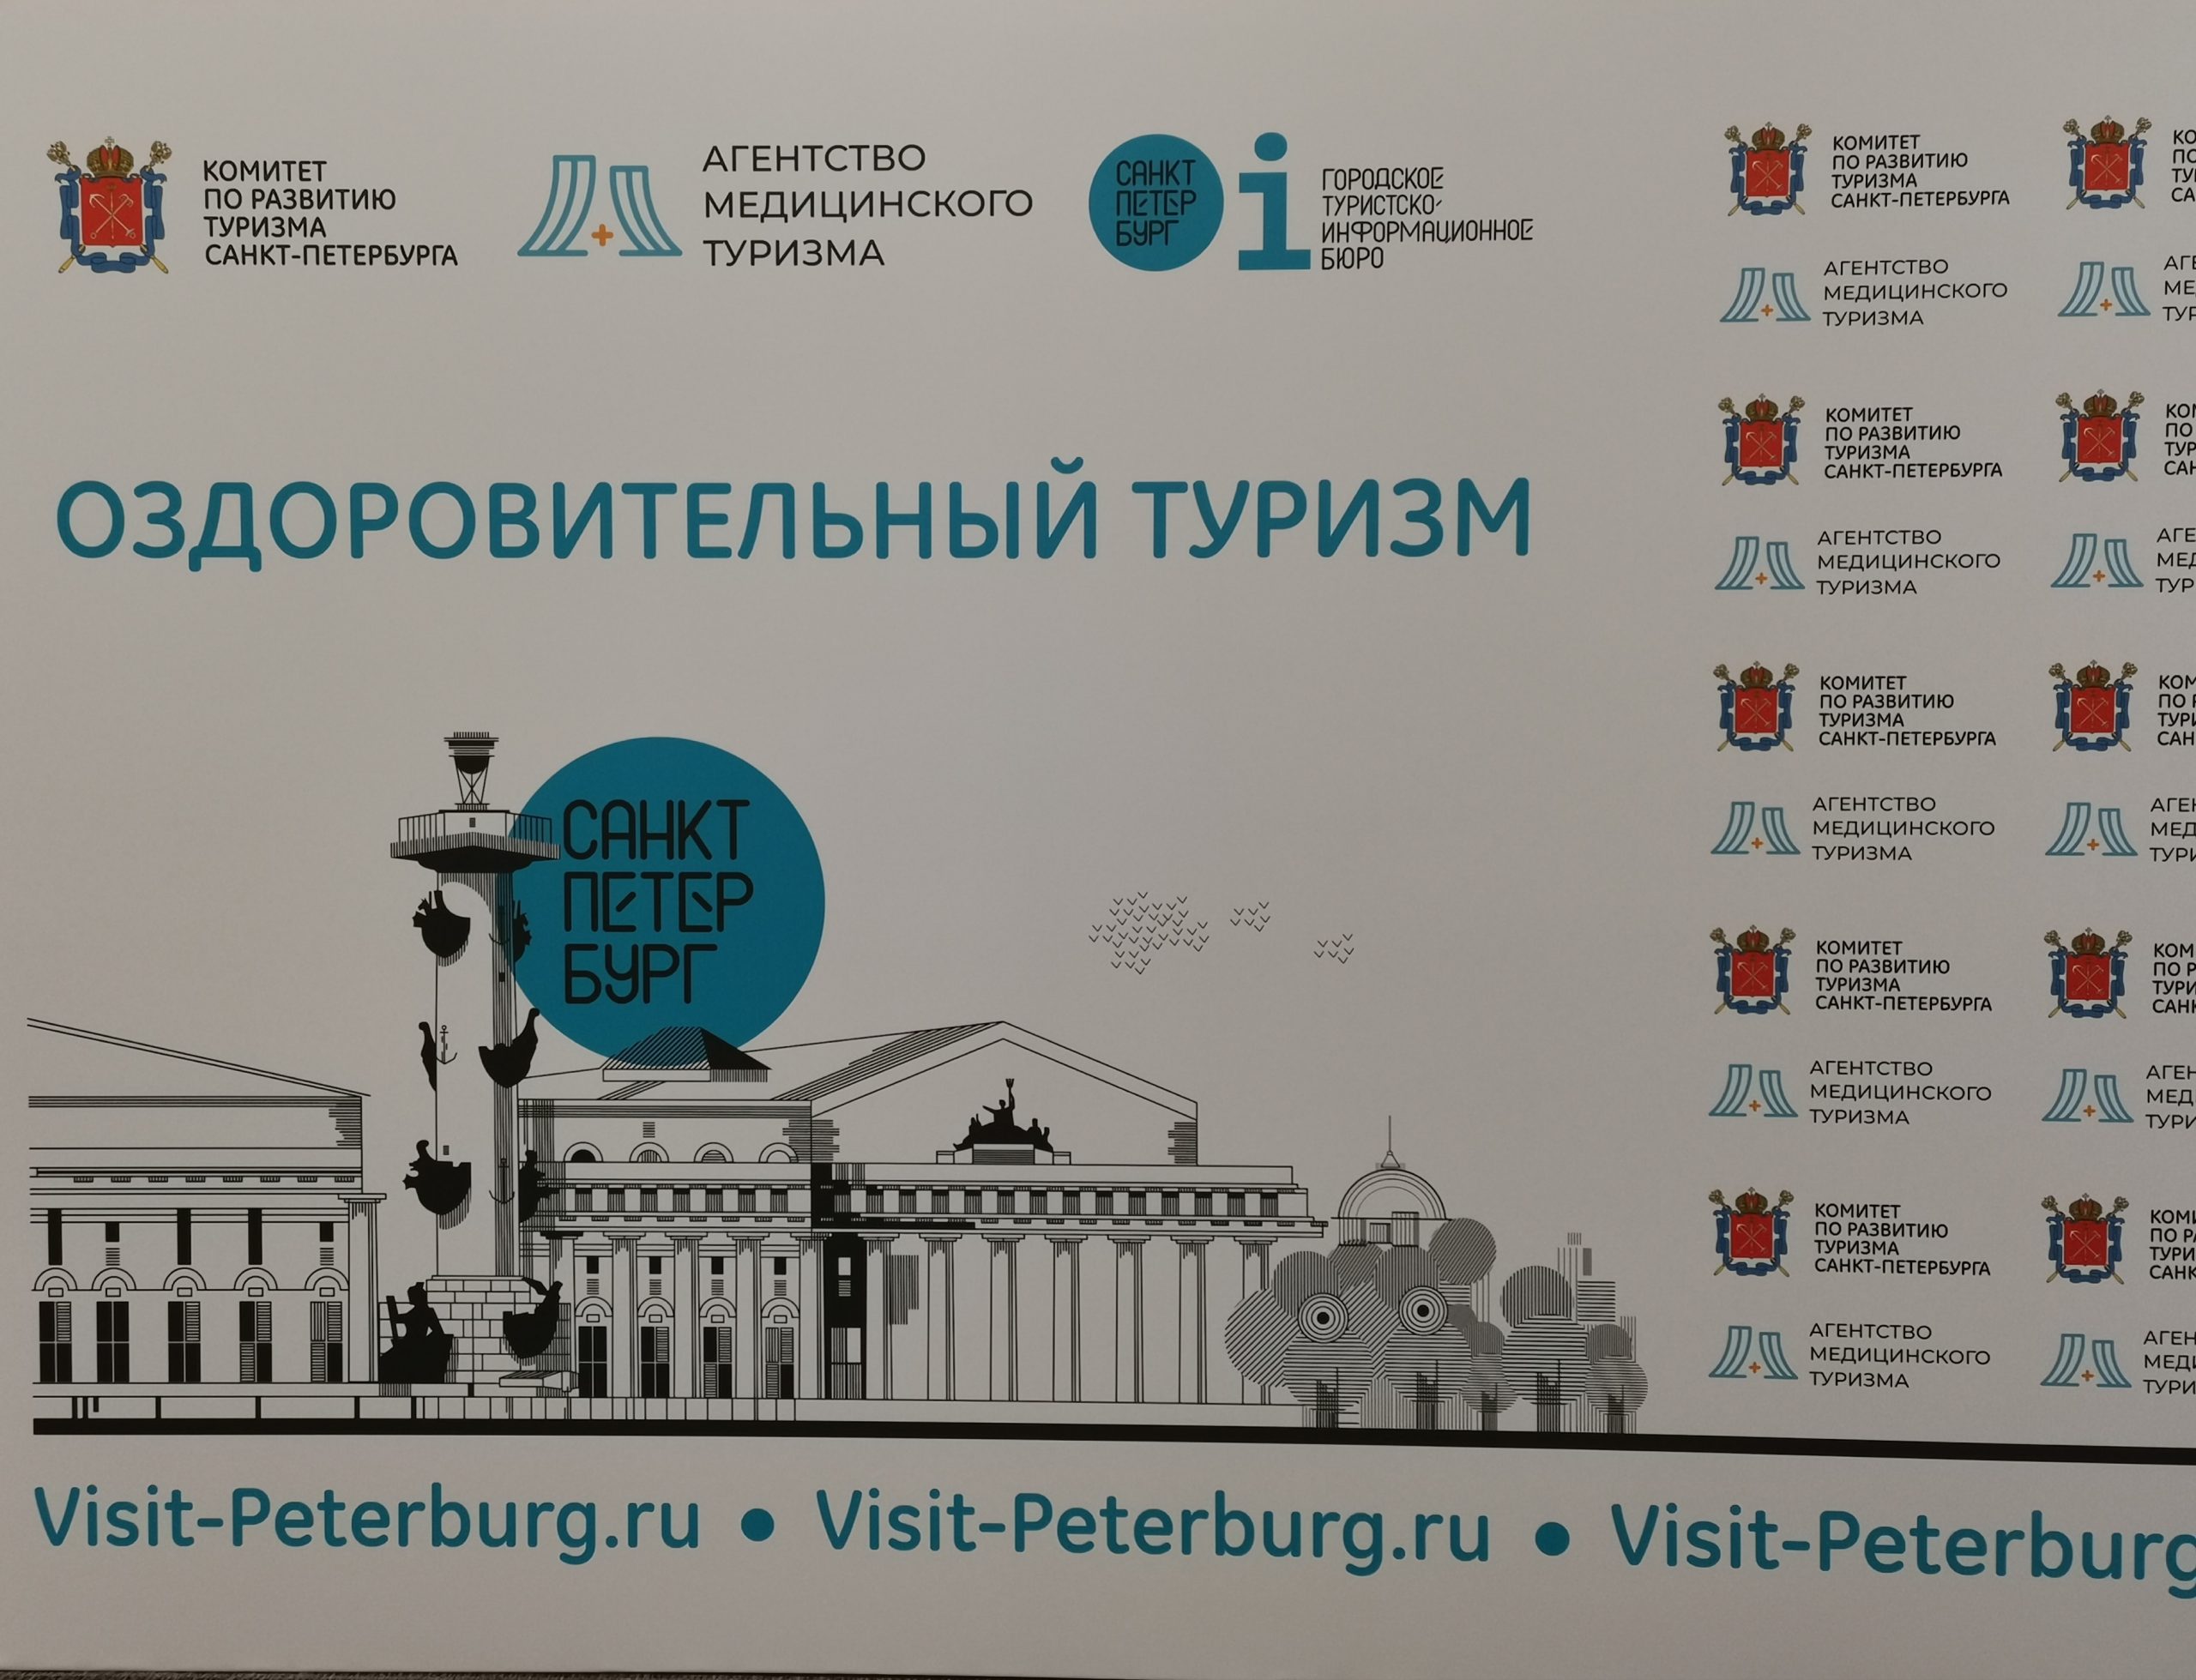 Медицинский и оздоровительный туризм Санкт-Петербурга: быть или не быть?